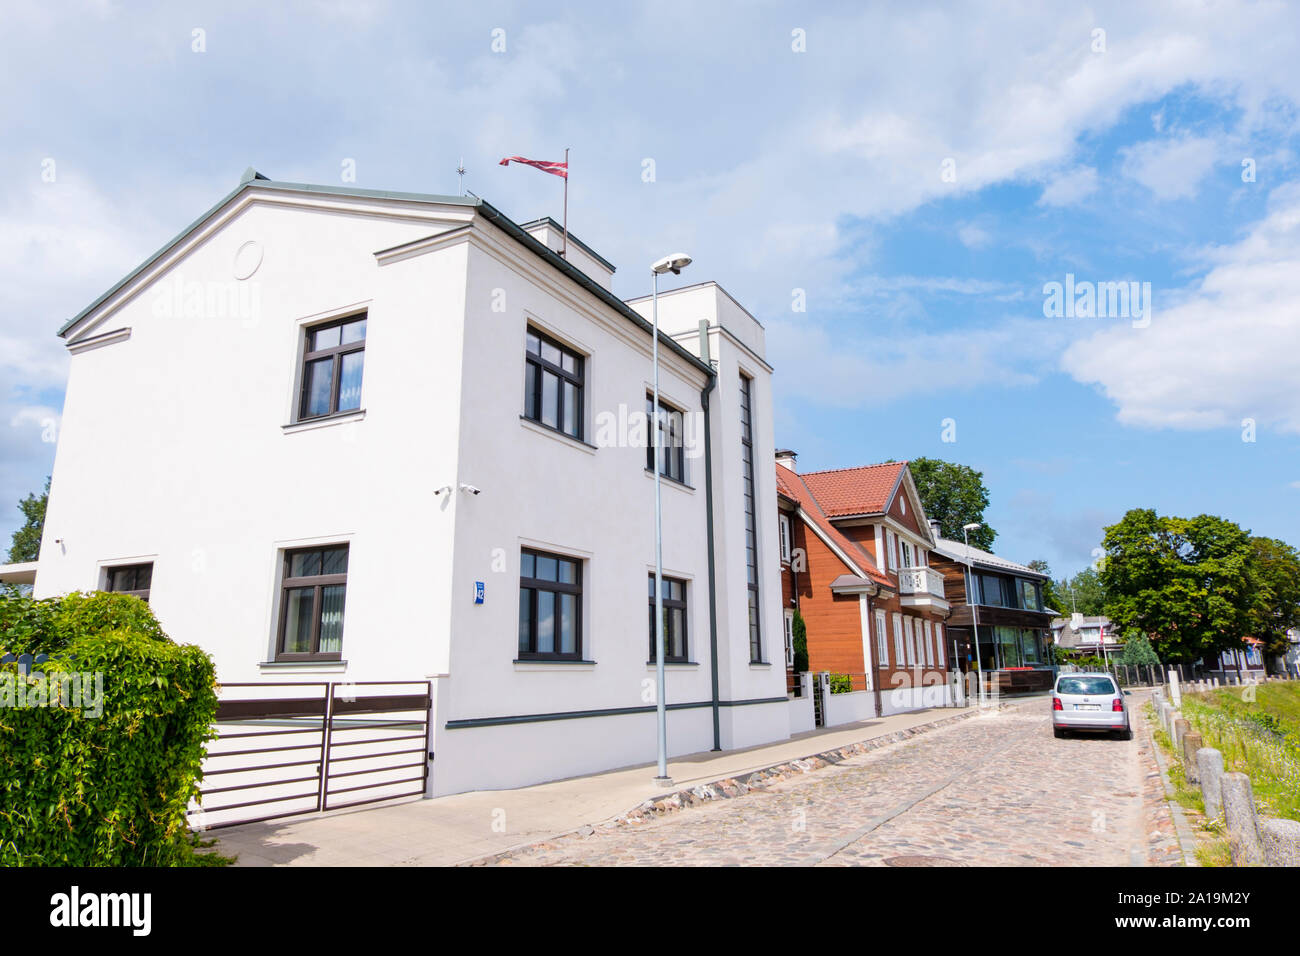 Balasta dambis, riverside street, Kipsala, Riga, Latvia Stock Photo